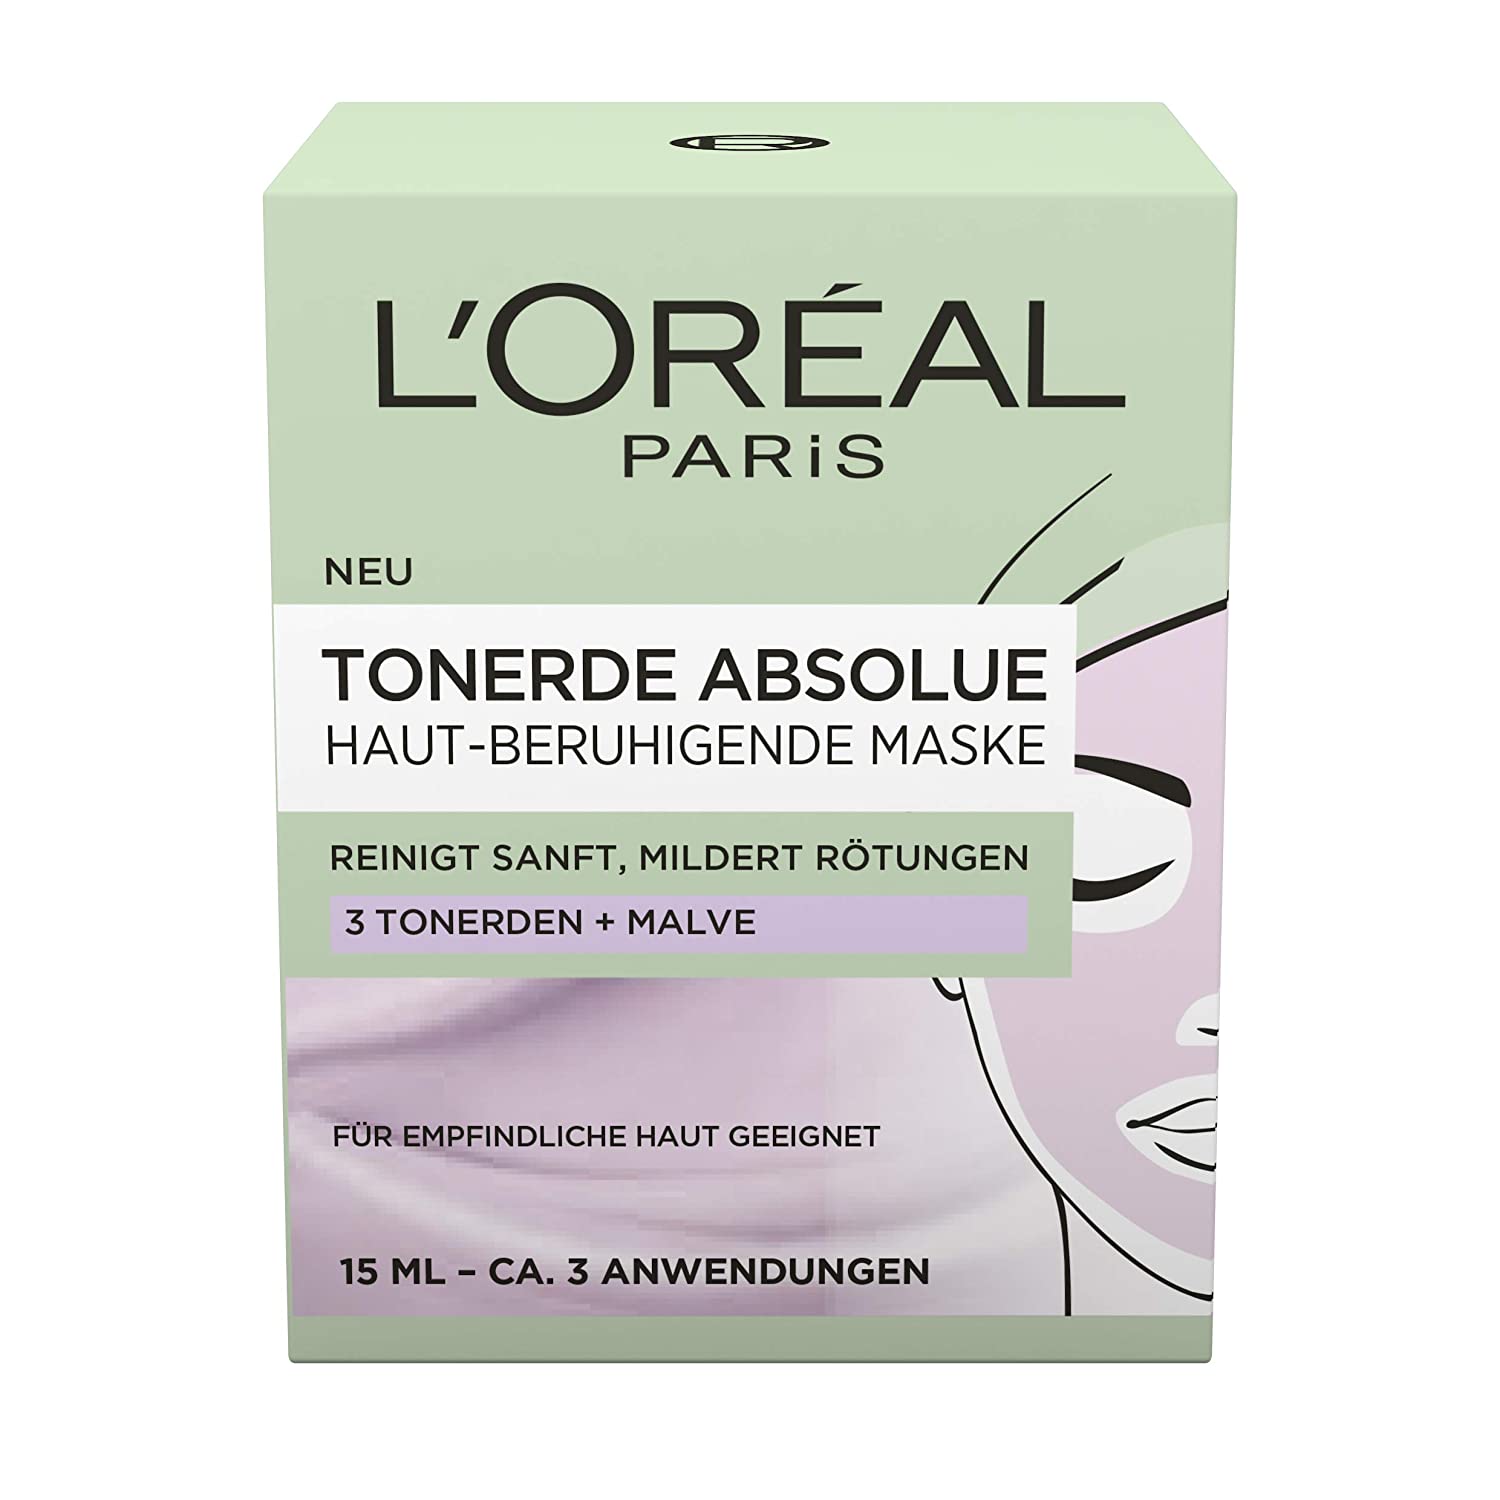 3x 15ml L'Oréal Paris Tonerde Absolue Haut-beruhigende Maske